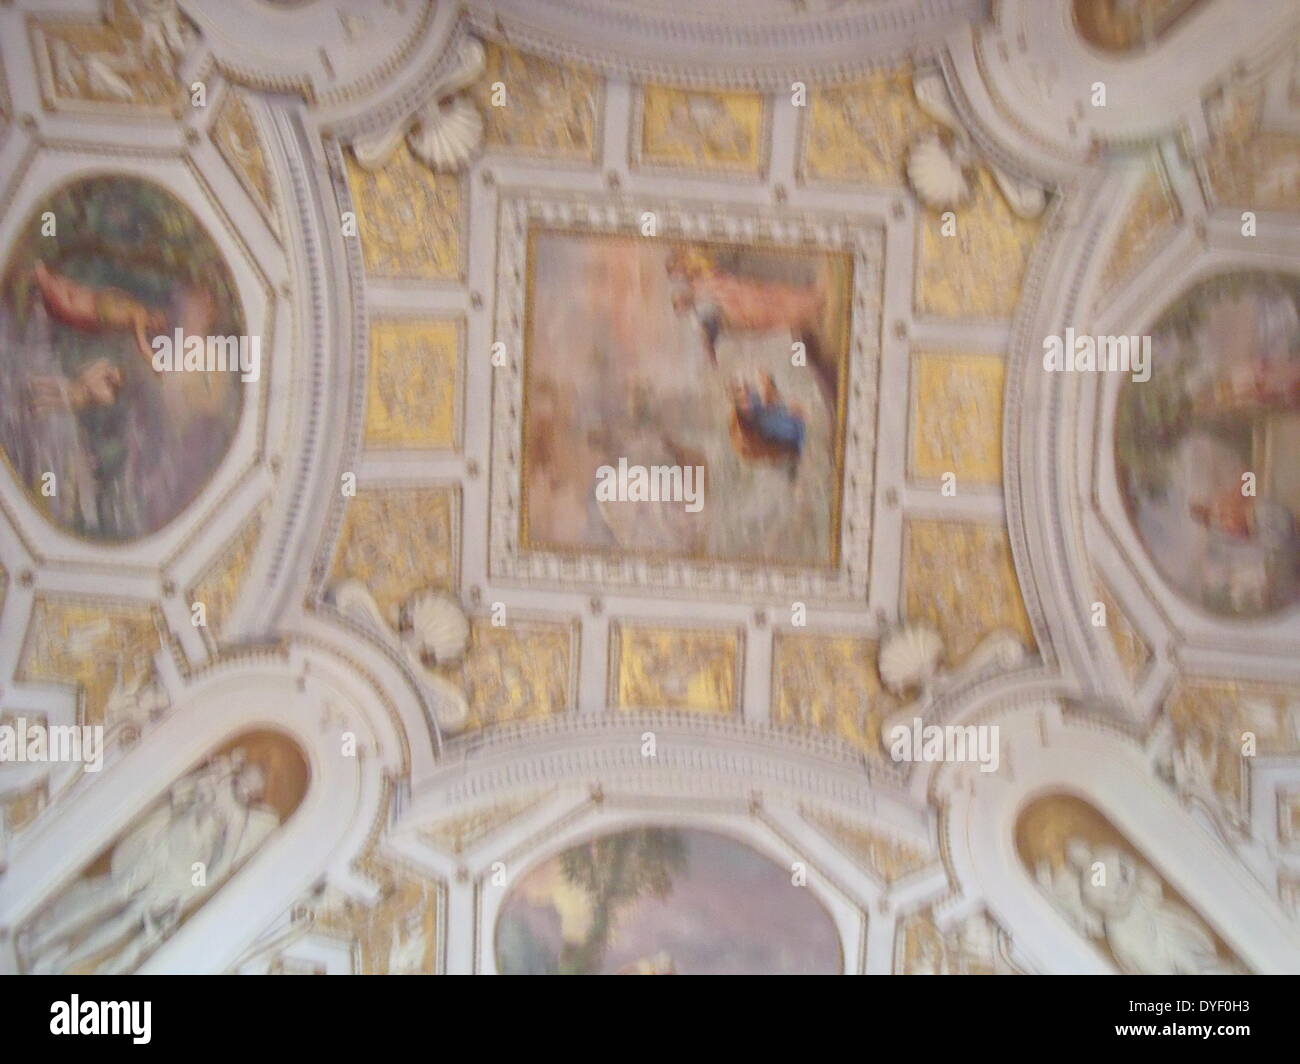 Détail des Musées du Vatican, une immense collection de chefs-d'œuvre de la Renaissance classique, etc. fondée au début du xvie siècle par le Pape Jules II, ils sont considérés comme certains des plus grands musées du monde. Cette image montre une partie du superbe plafond peint. Banque D'Images